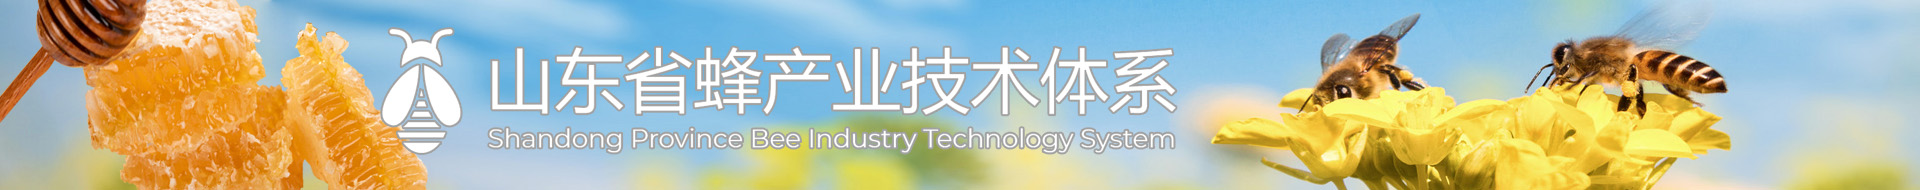 山东省蜂产业技术体系